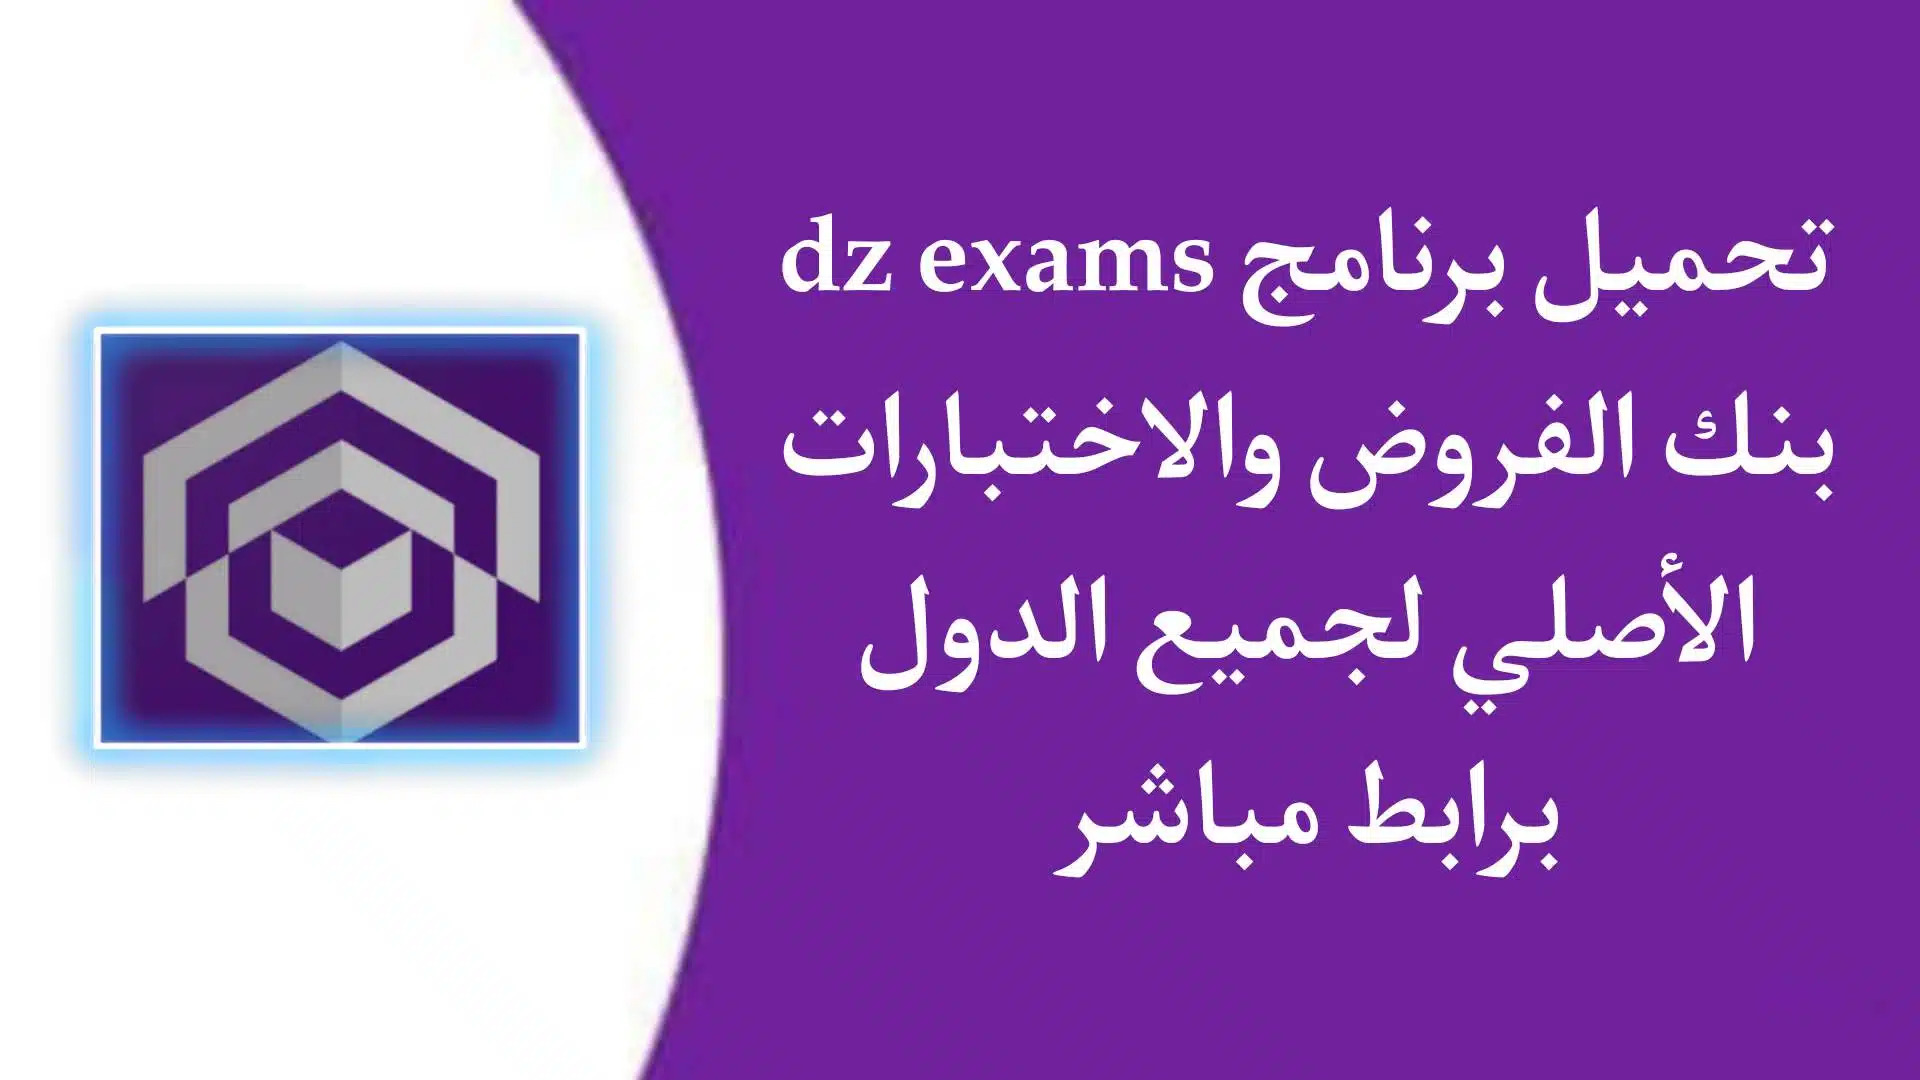 تحميل تطبيق dz exams بنك الفروض والاختبارات الاصلي 2022